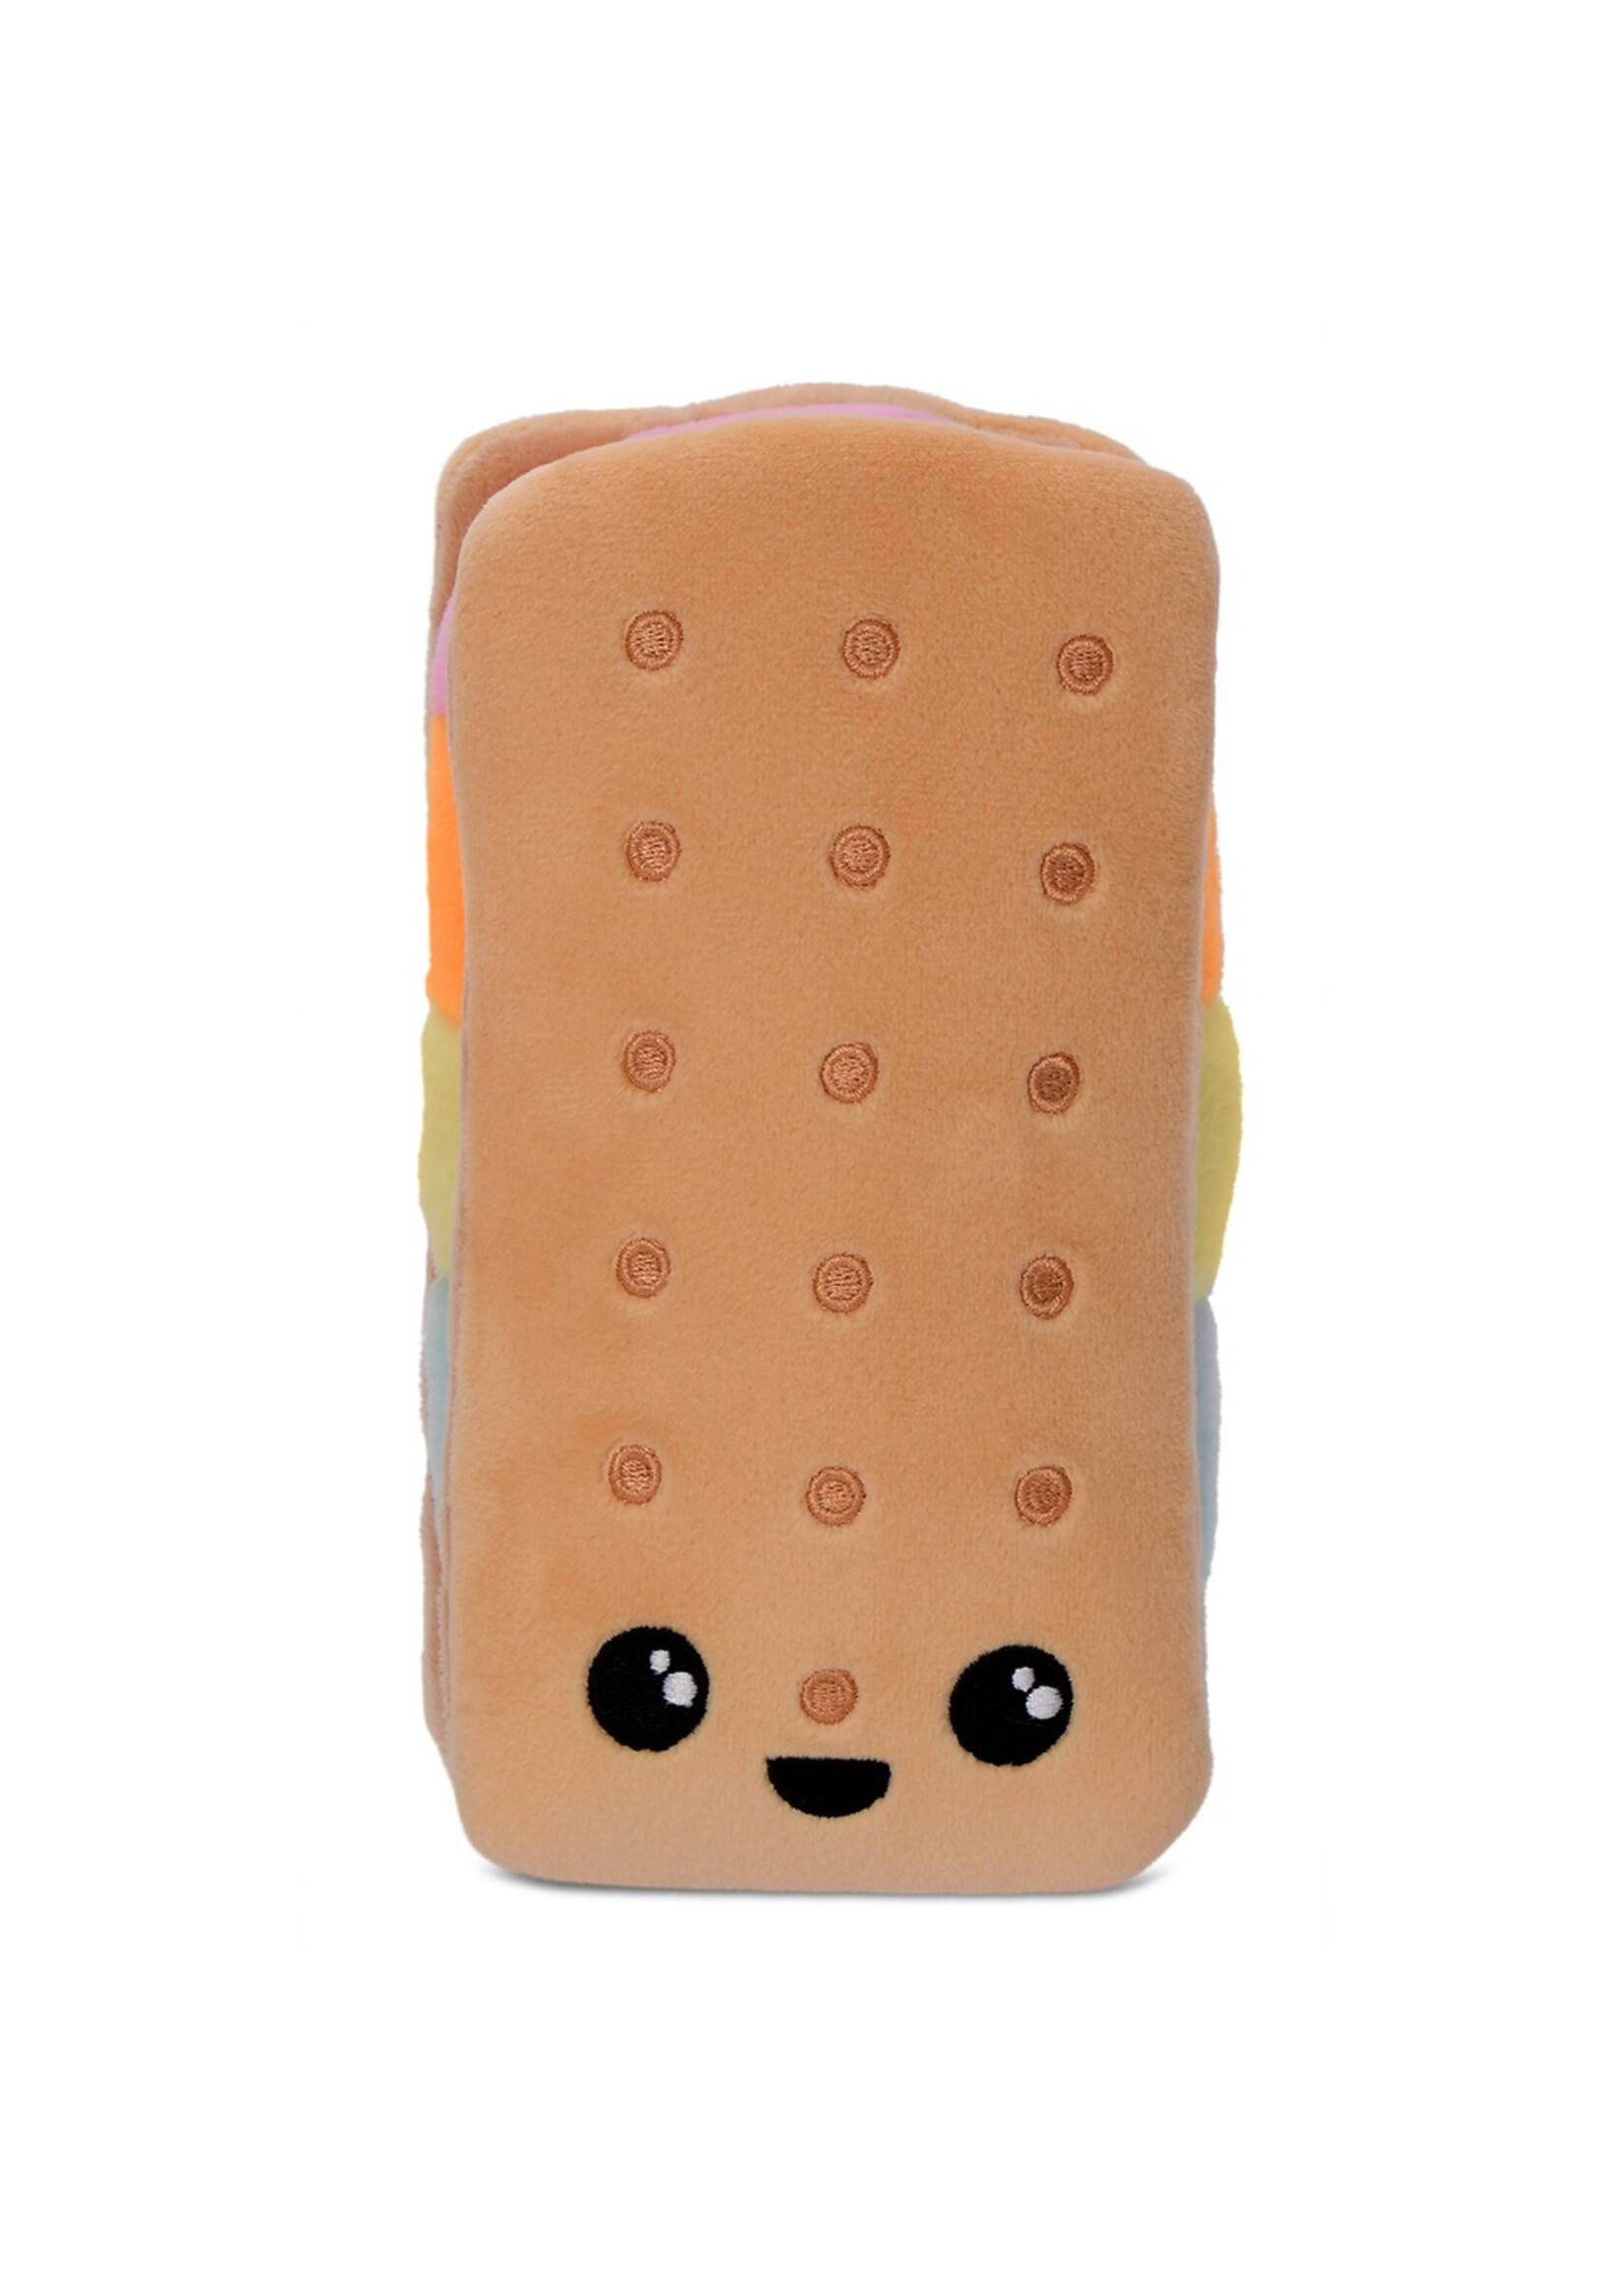 Iscream IScream Ice Cream Sandwich Mini Plush